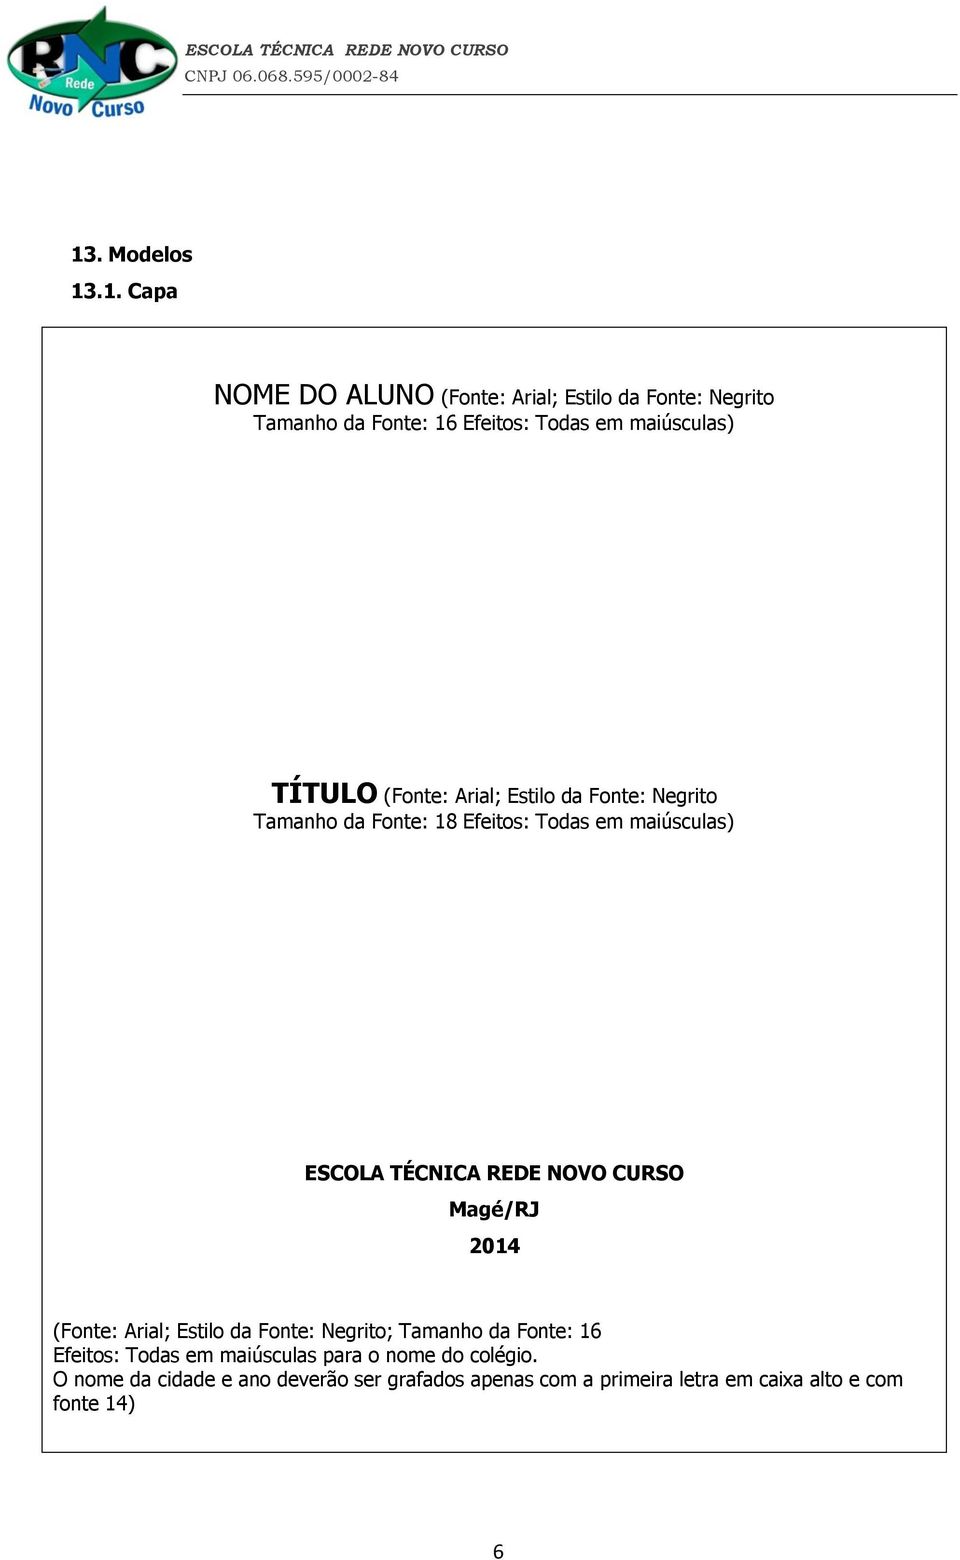 TÉCNICA REDE NOVO CURSO Magé/RJ 2014 (Fonte: Arial; Estilo da Fonte: Negrito; Tamanho da Fonte: 16 Efeitos: Todas em